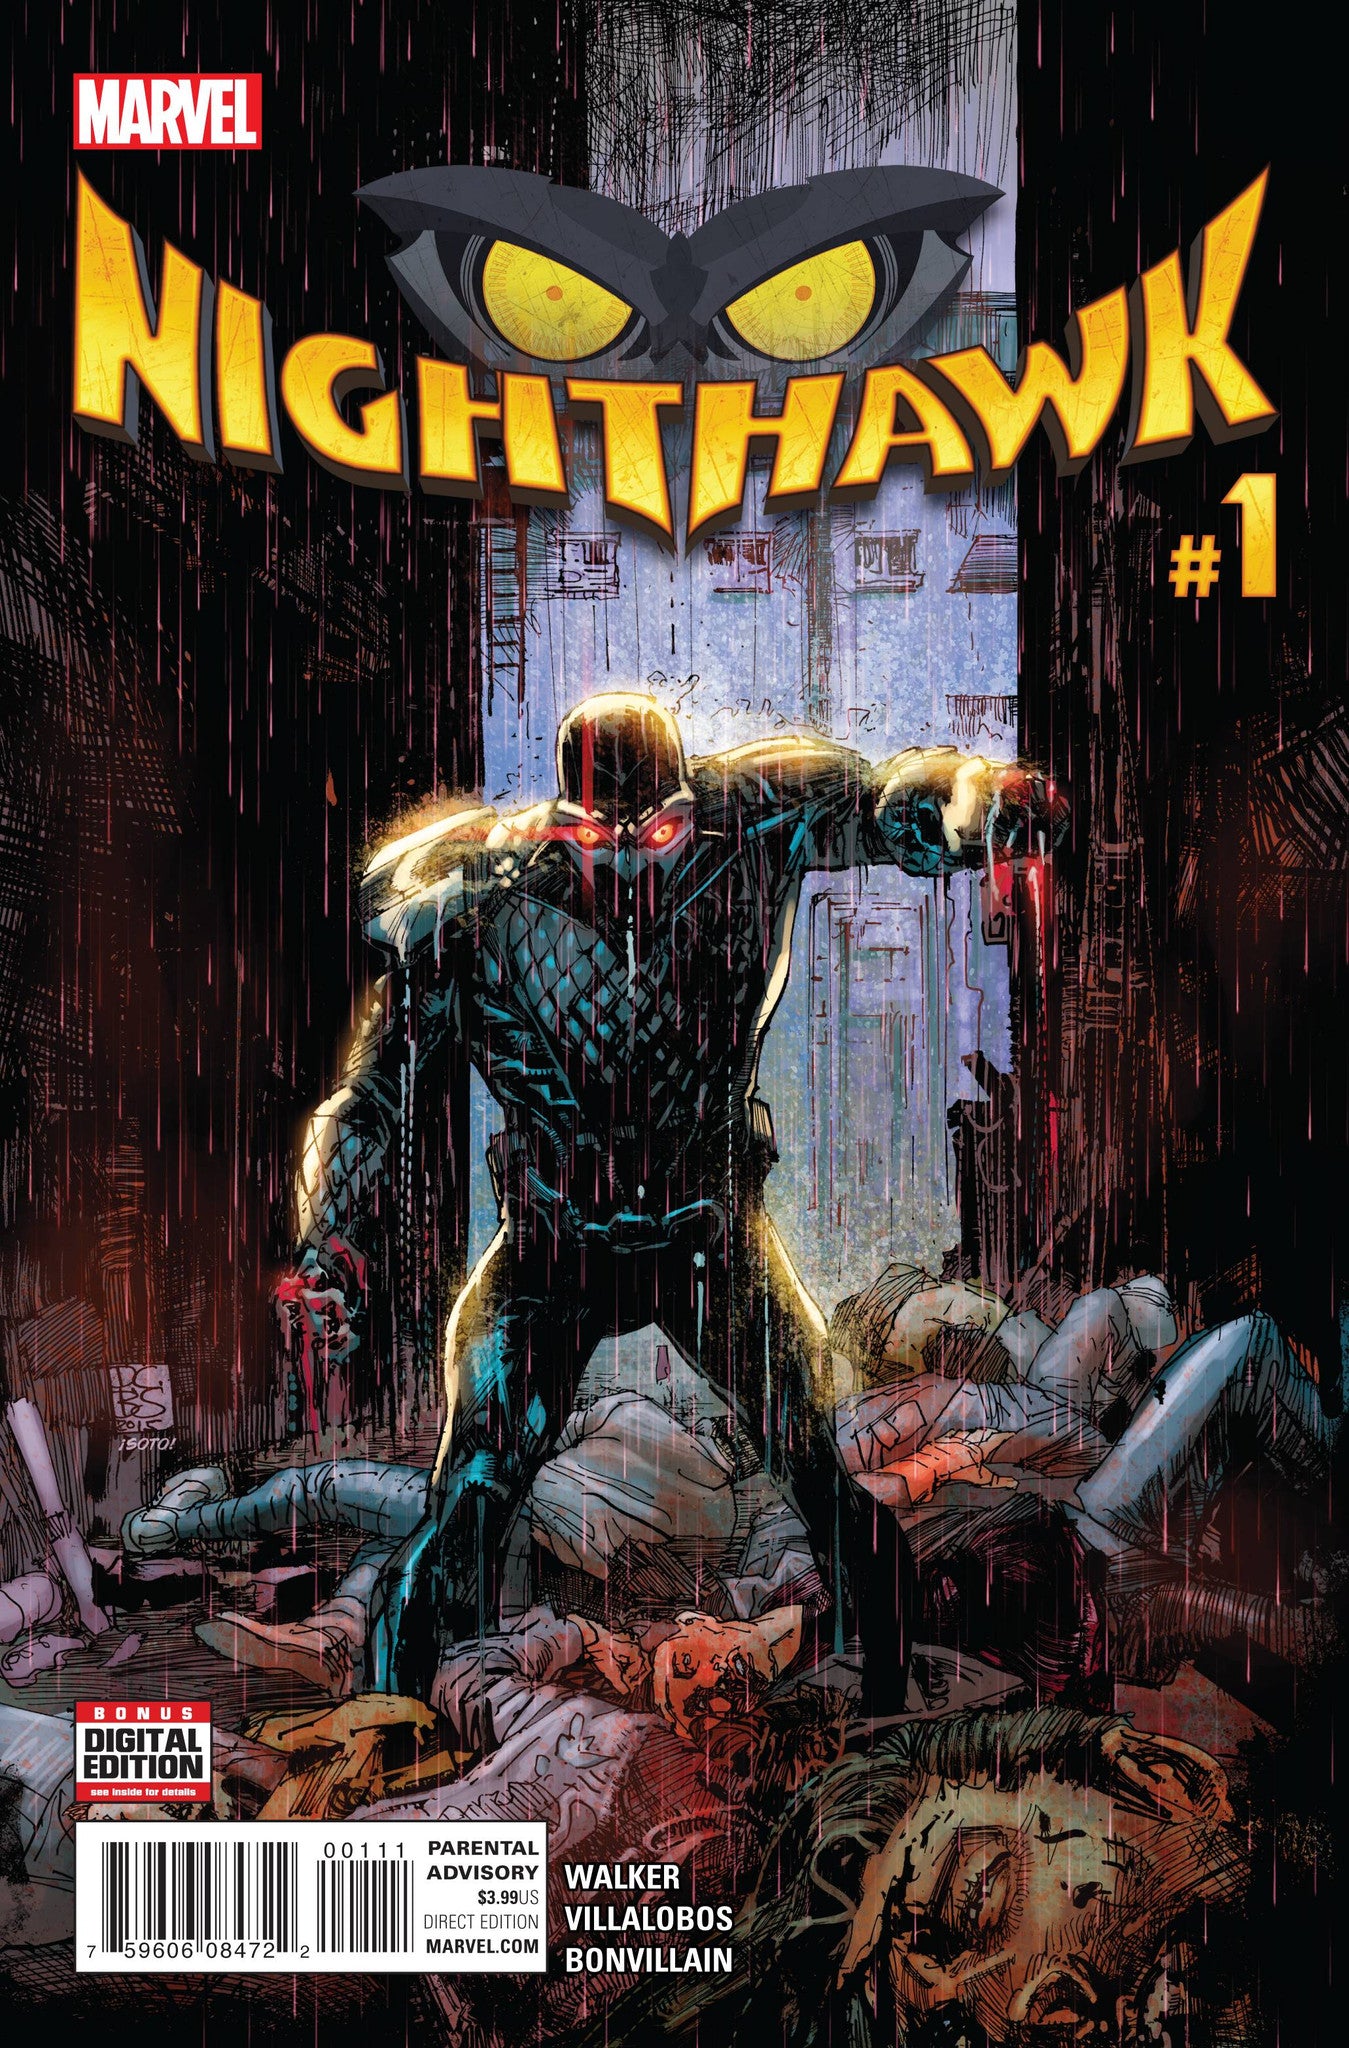 NIGHTHAWK #1 COVER